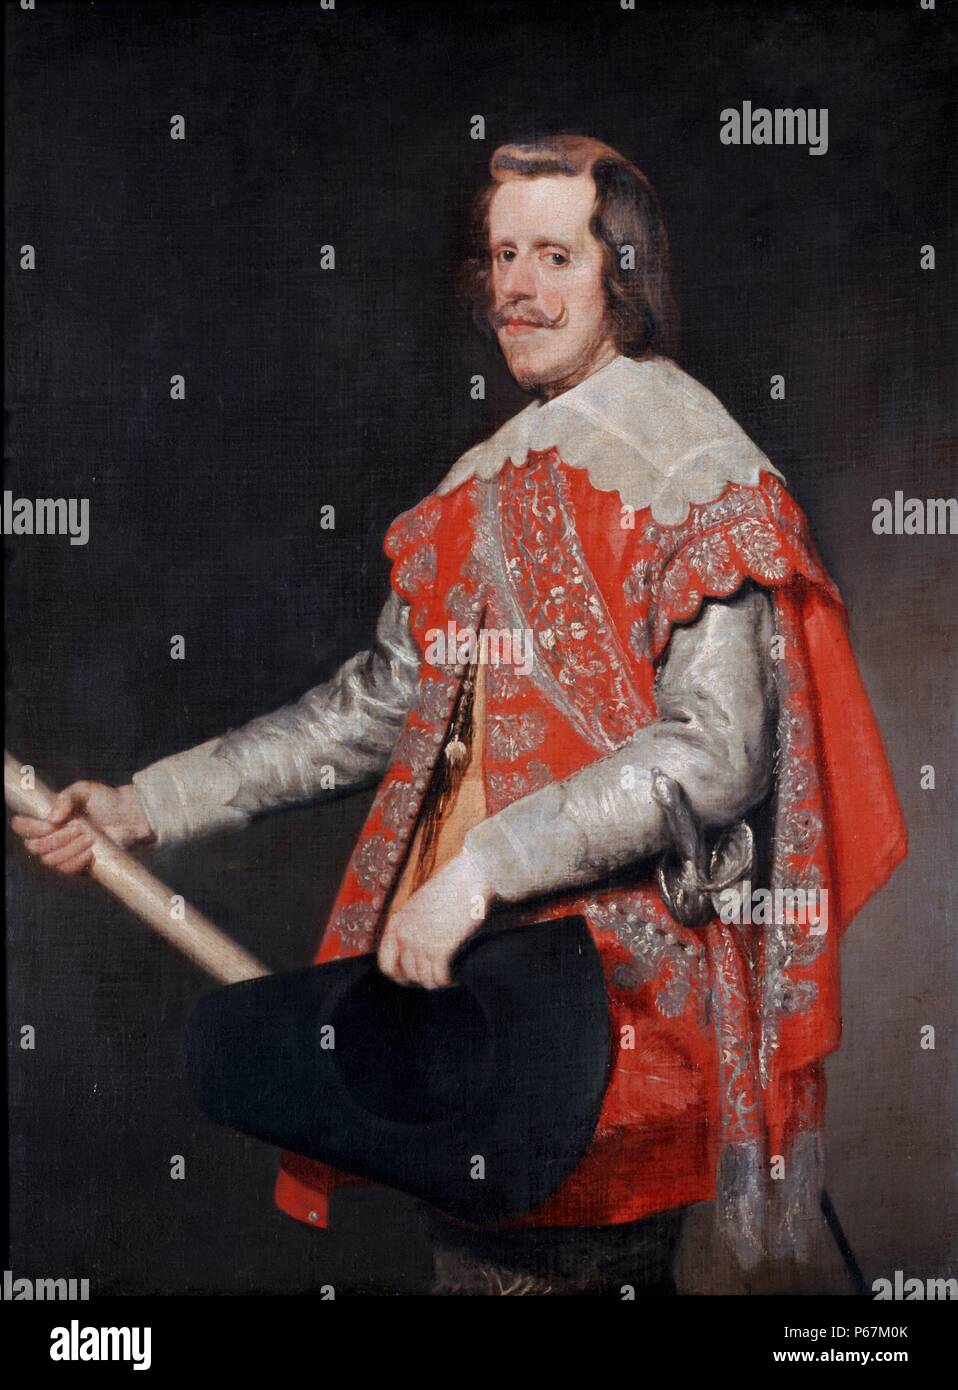 Ritratto di Filippo IV Re di Spagna (1605-1665). Dipinto da Velázquez, Diego Rodríguez de Silva y (1599 - 1660), pittore spagnolo che è stato il primo artista di corte di re Filippo IV e uno dei più importanti pittori della spagnola Golden Age. Risalenti al XVII secolo Foto Stock